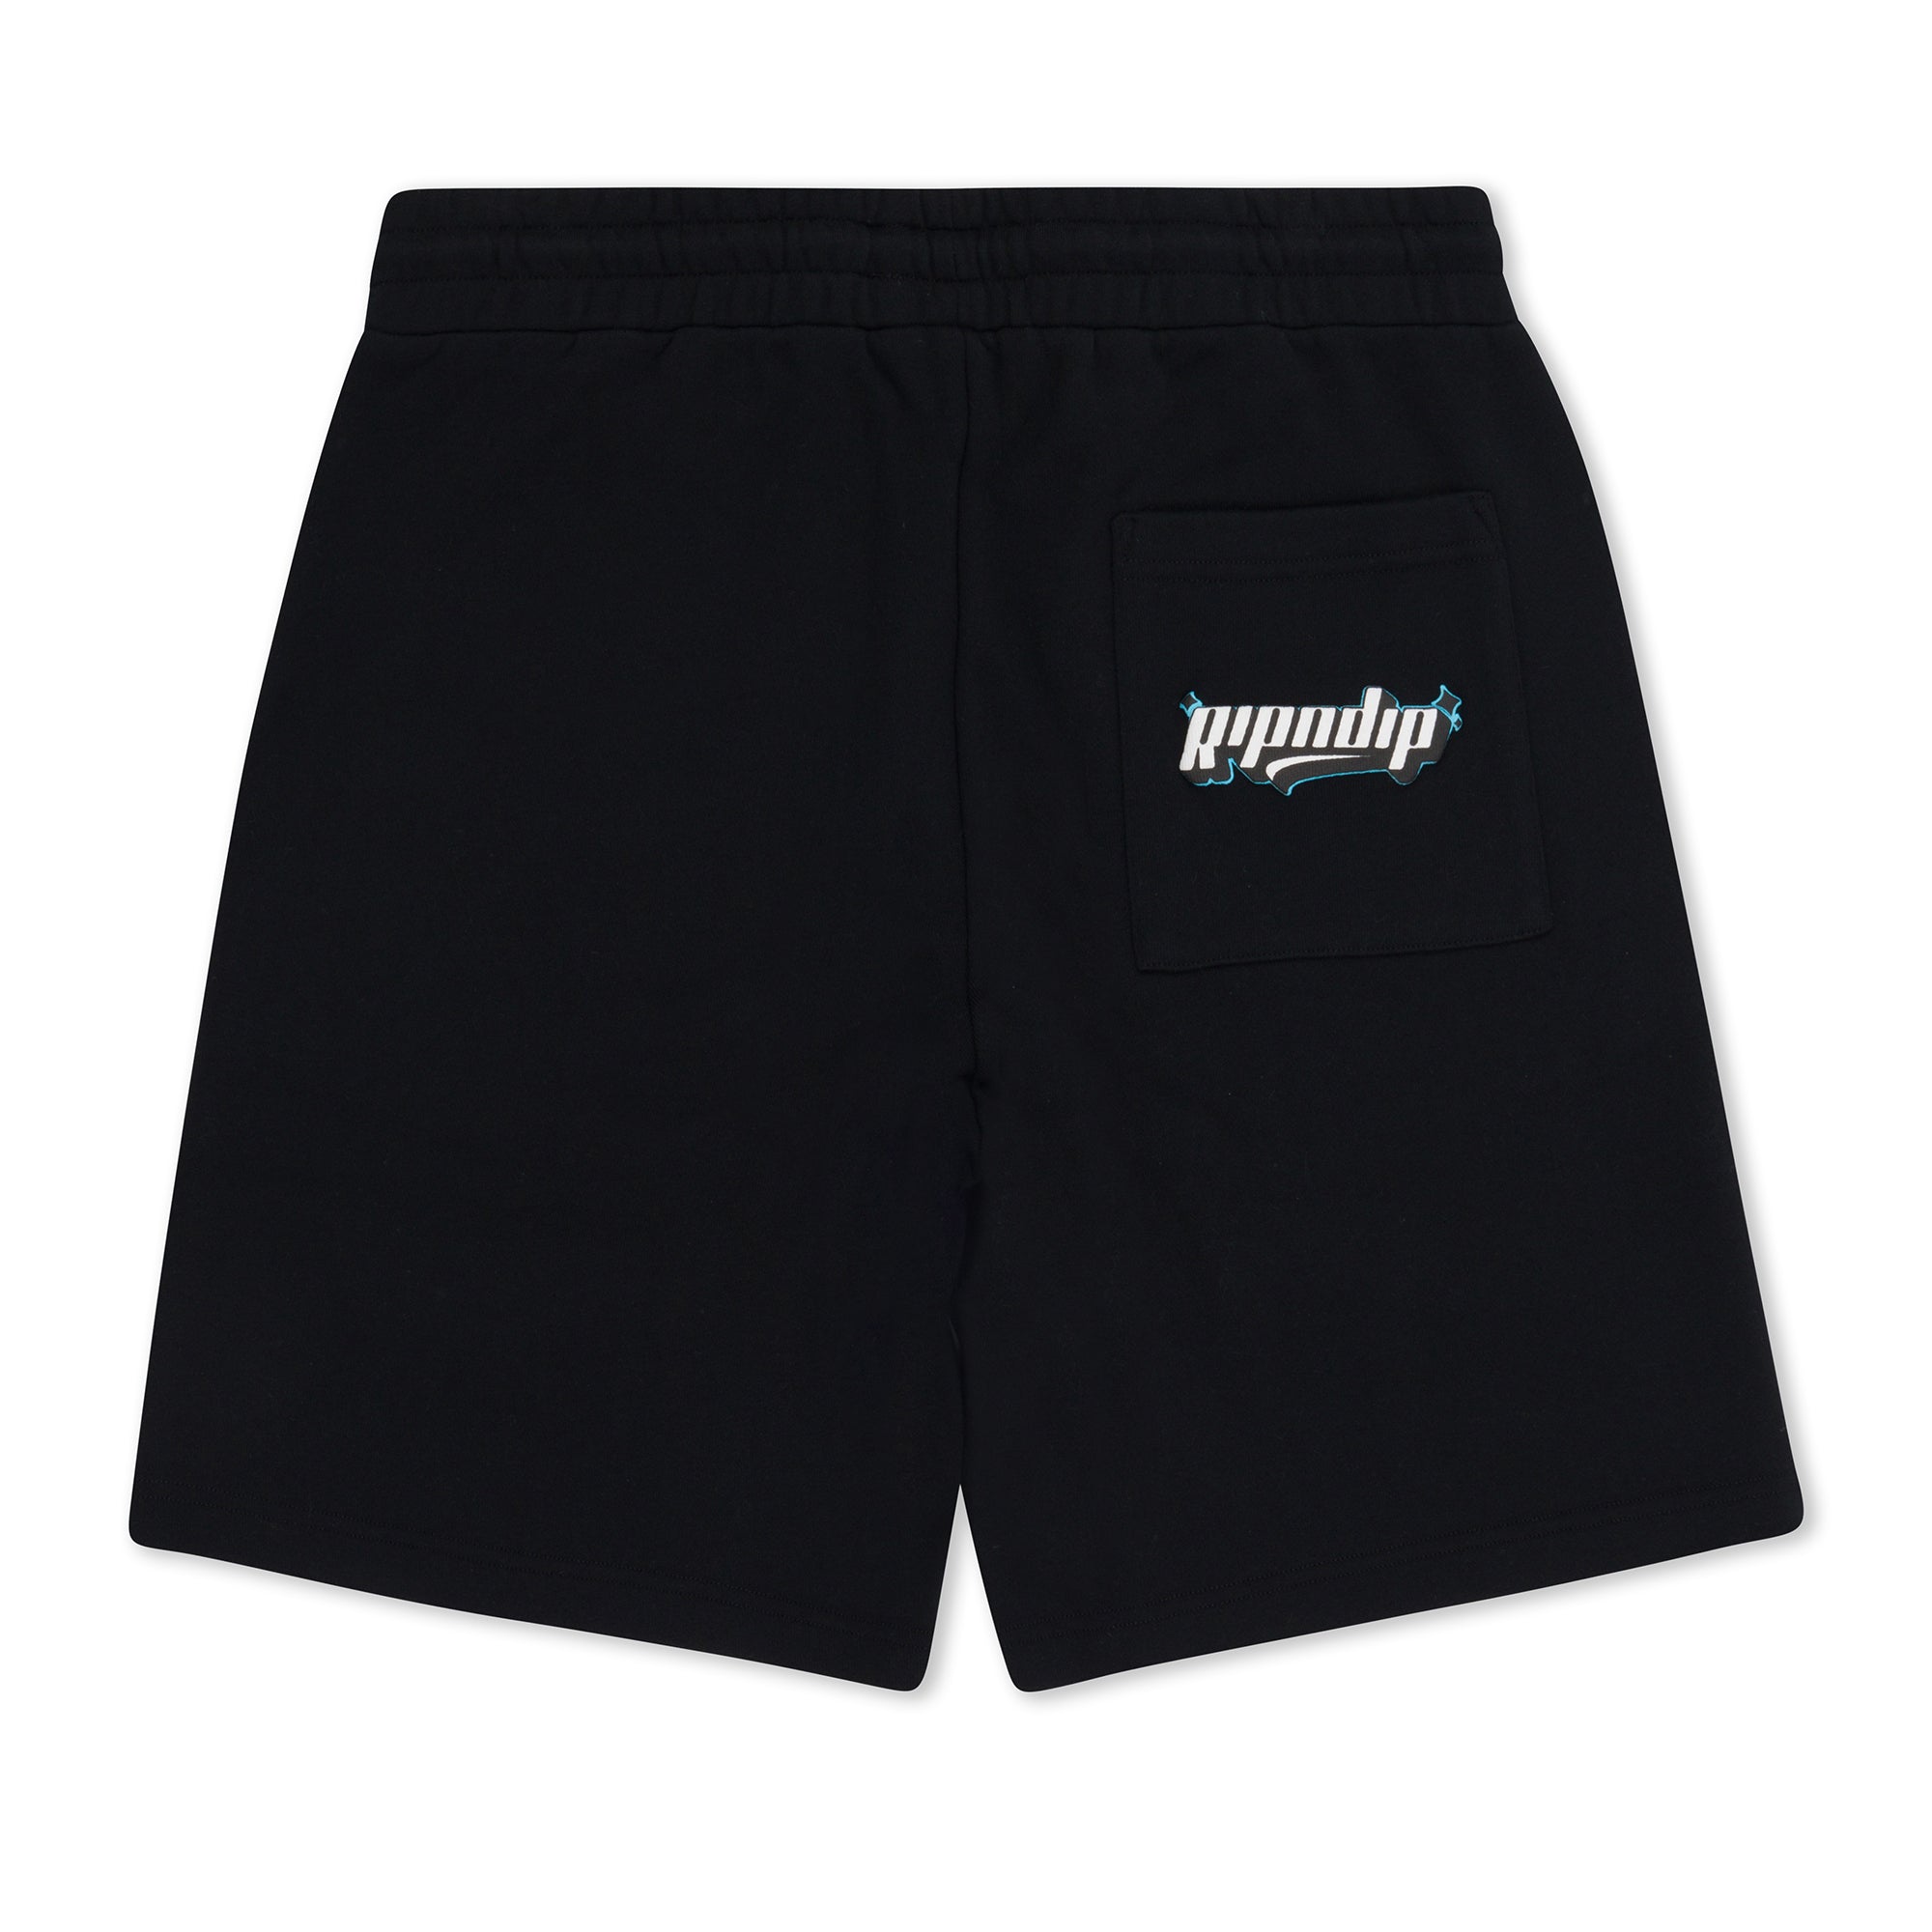 Desperado Sweat shorts (Black)